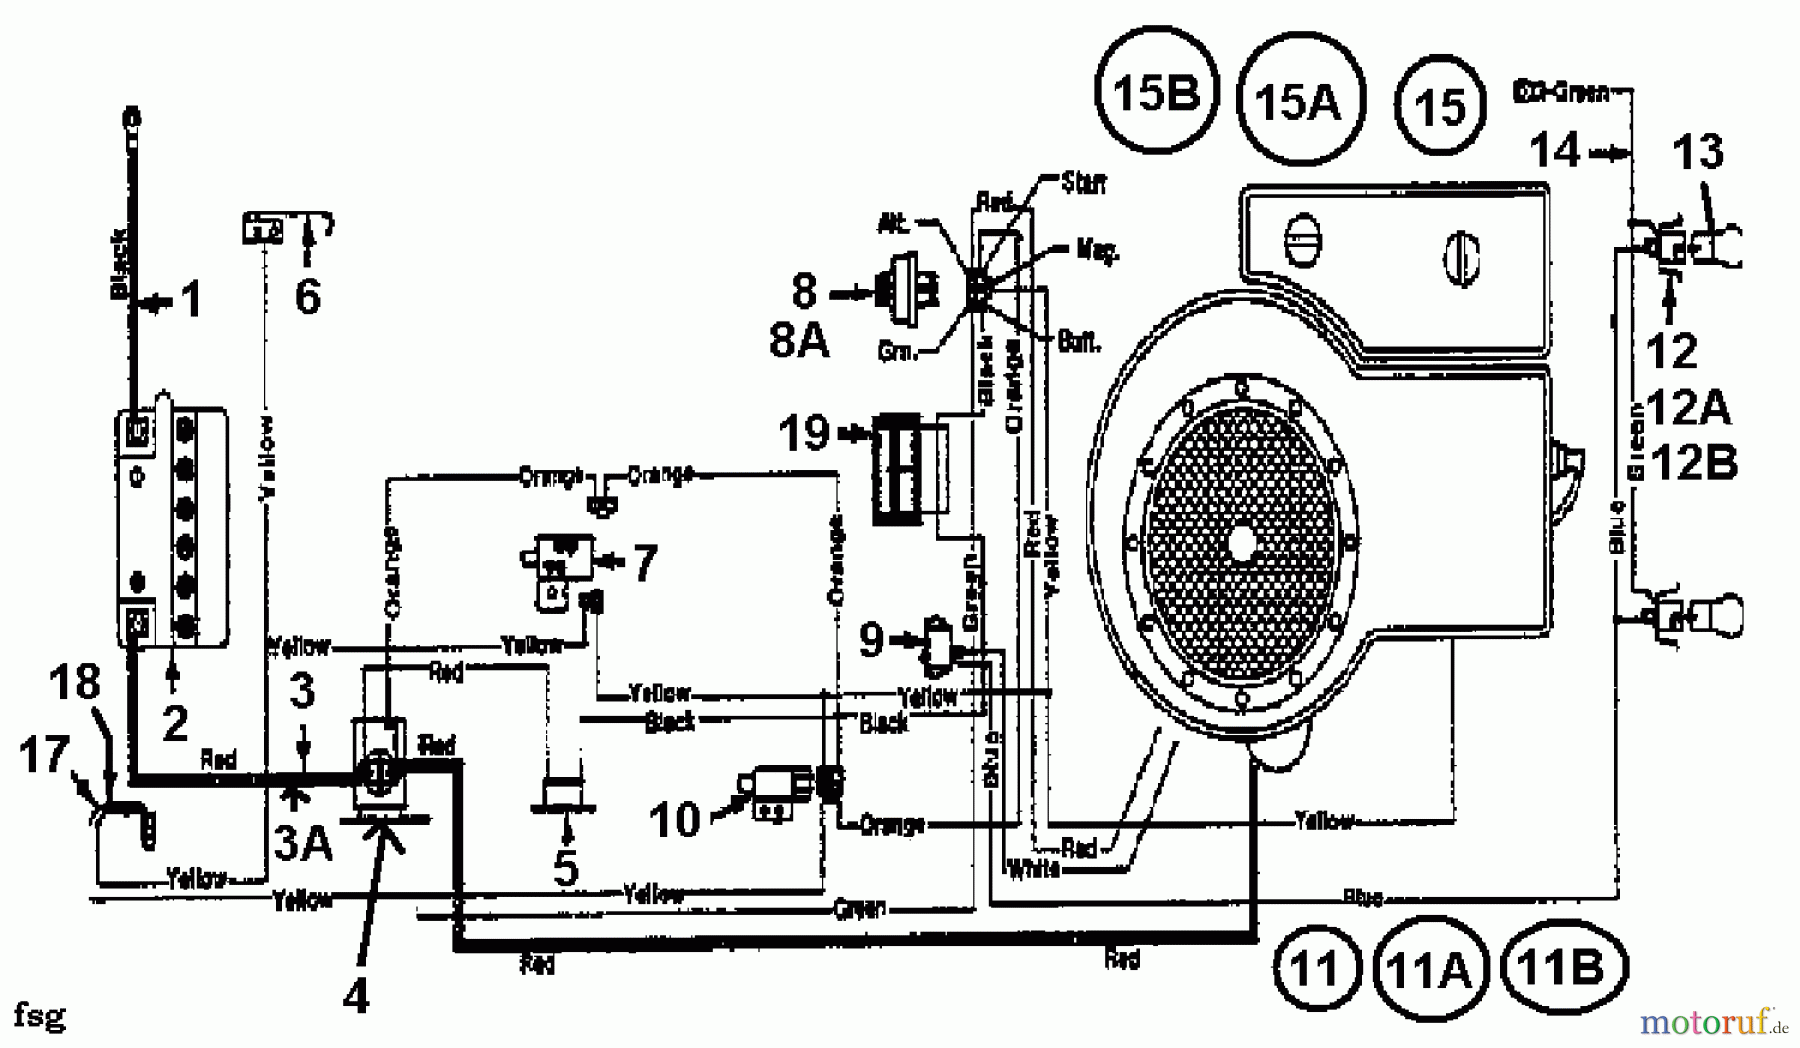  Gardol Tracteurs de pelouse 12/91 133I471E668  (1993) Plan électrique cylindre simple